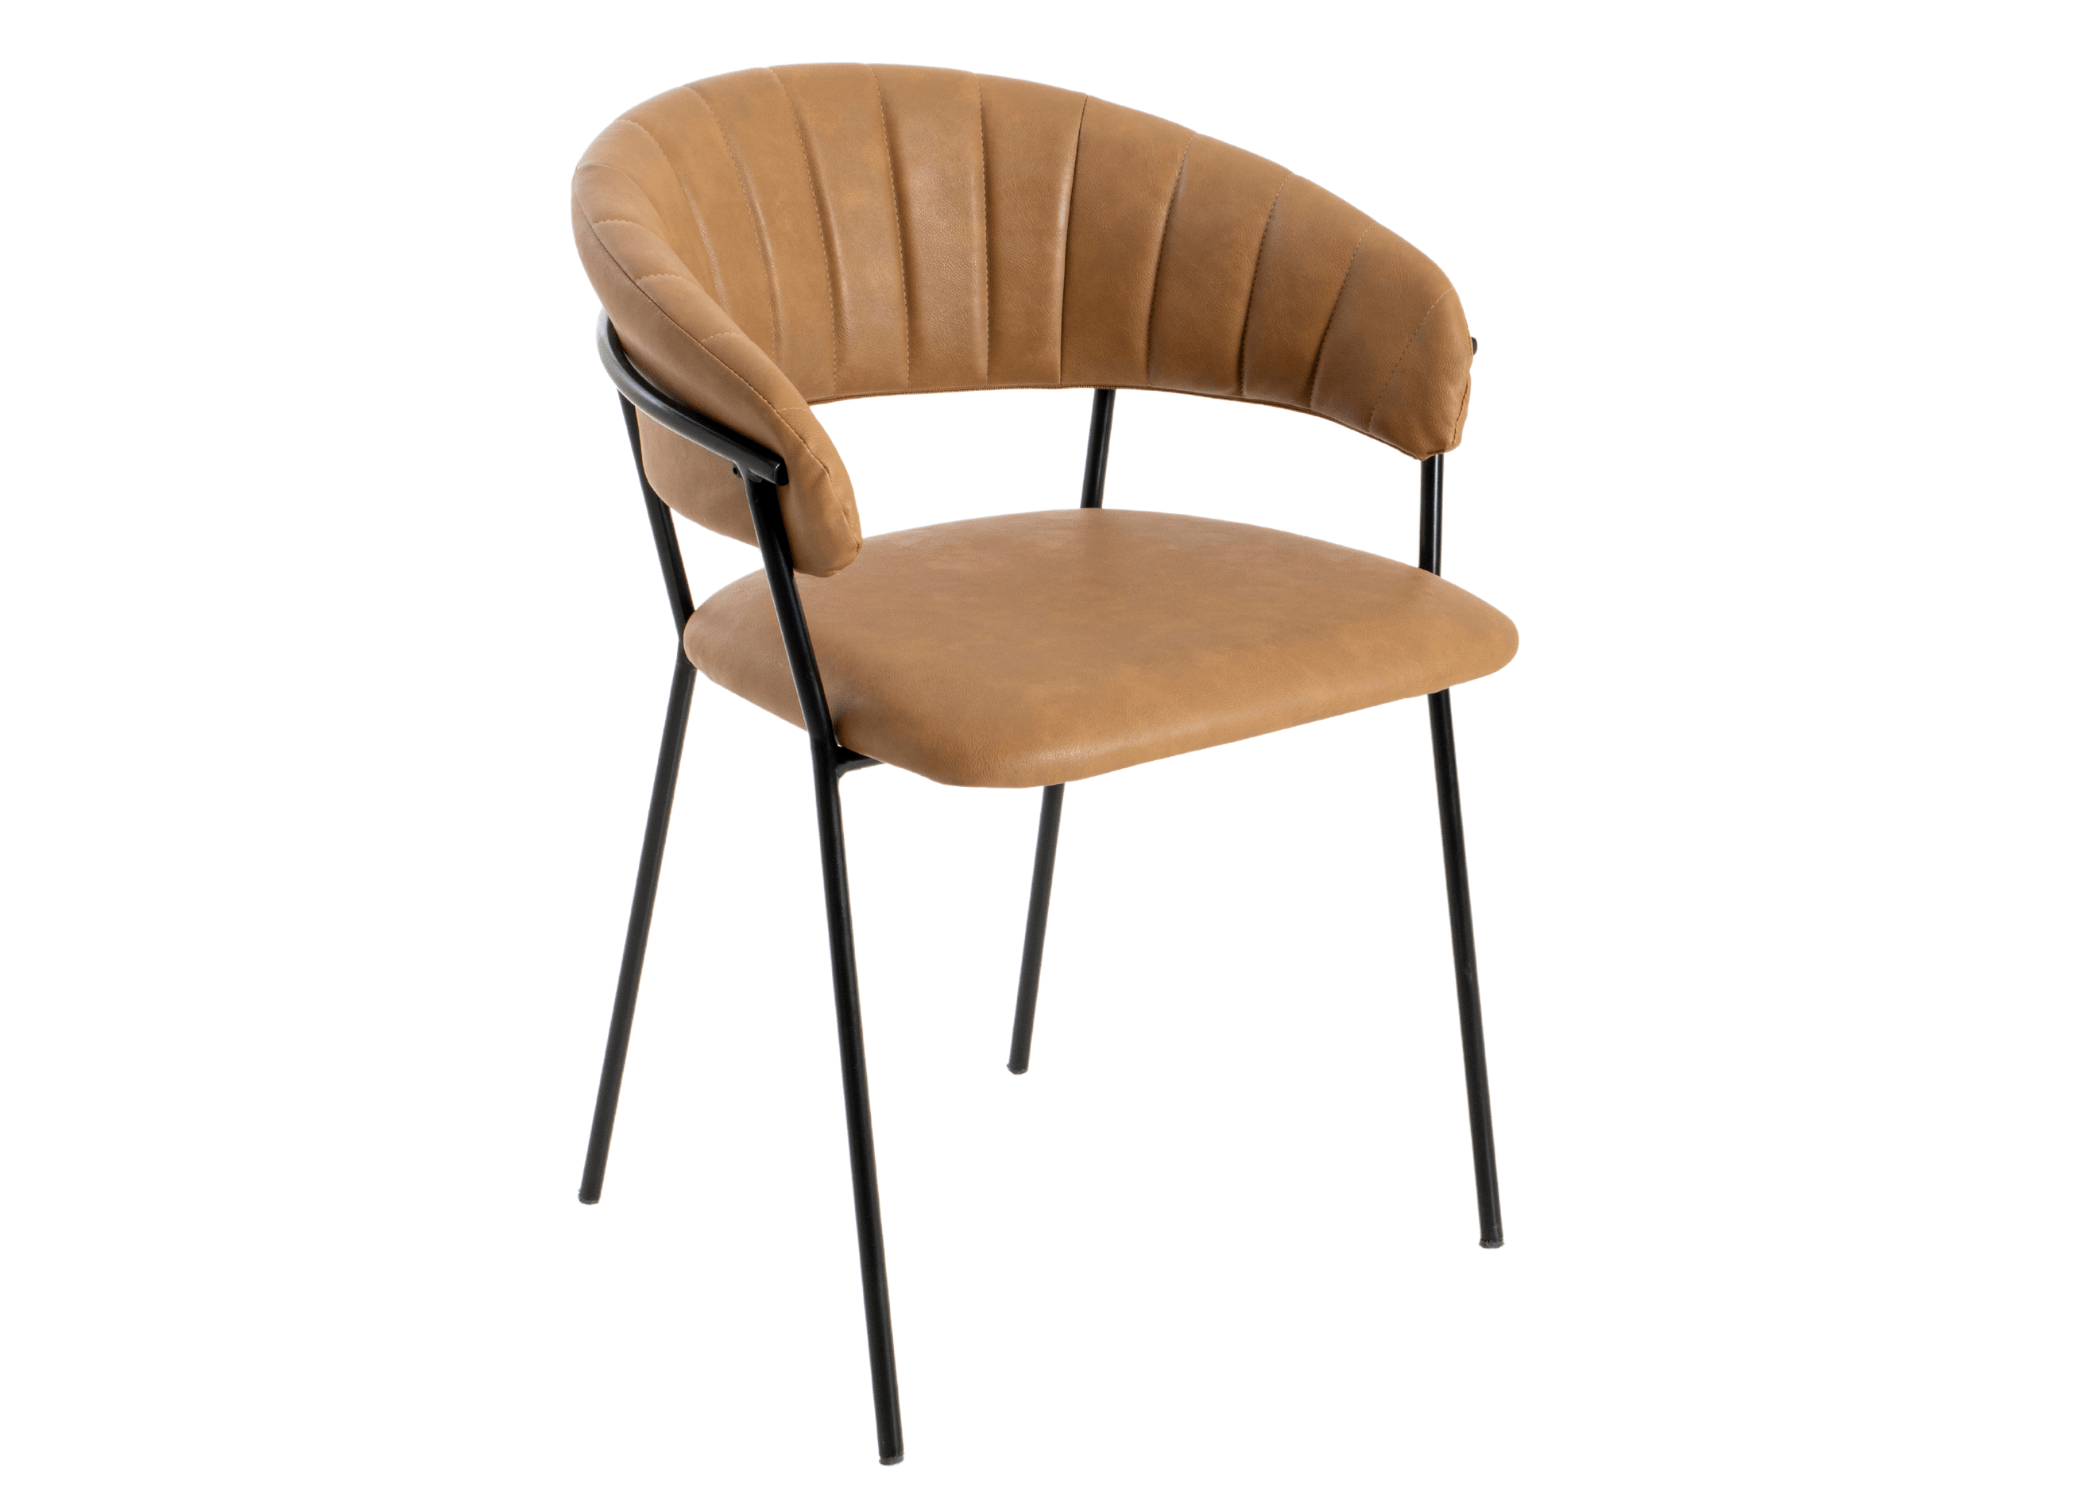 Cadeira Suellen: estilo e charme com encosto vazado em ambientes modernos.